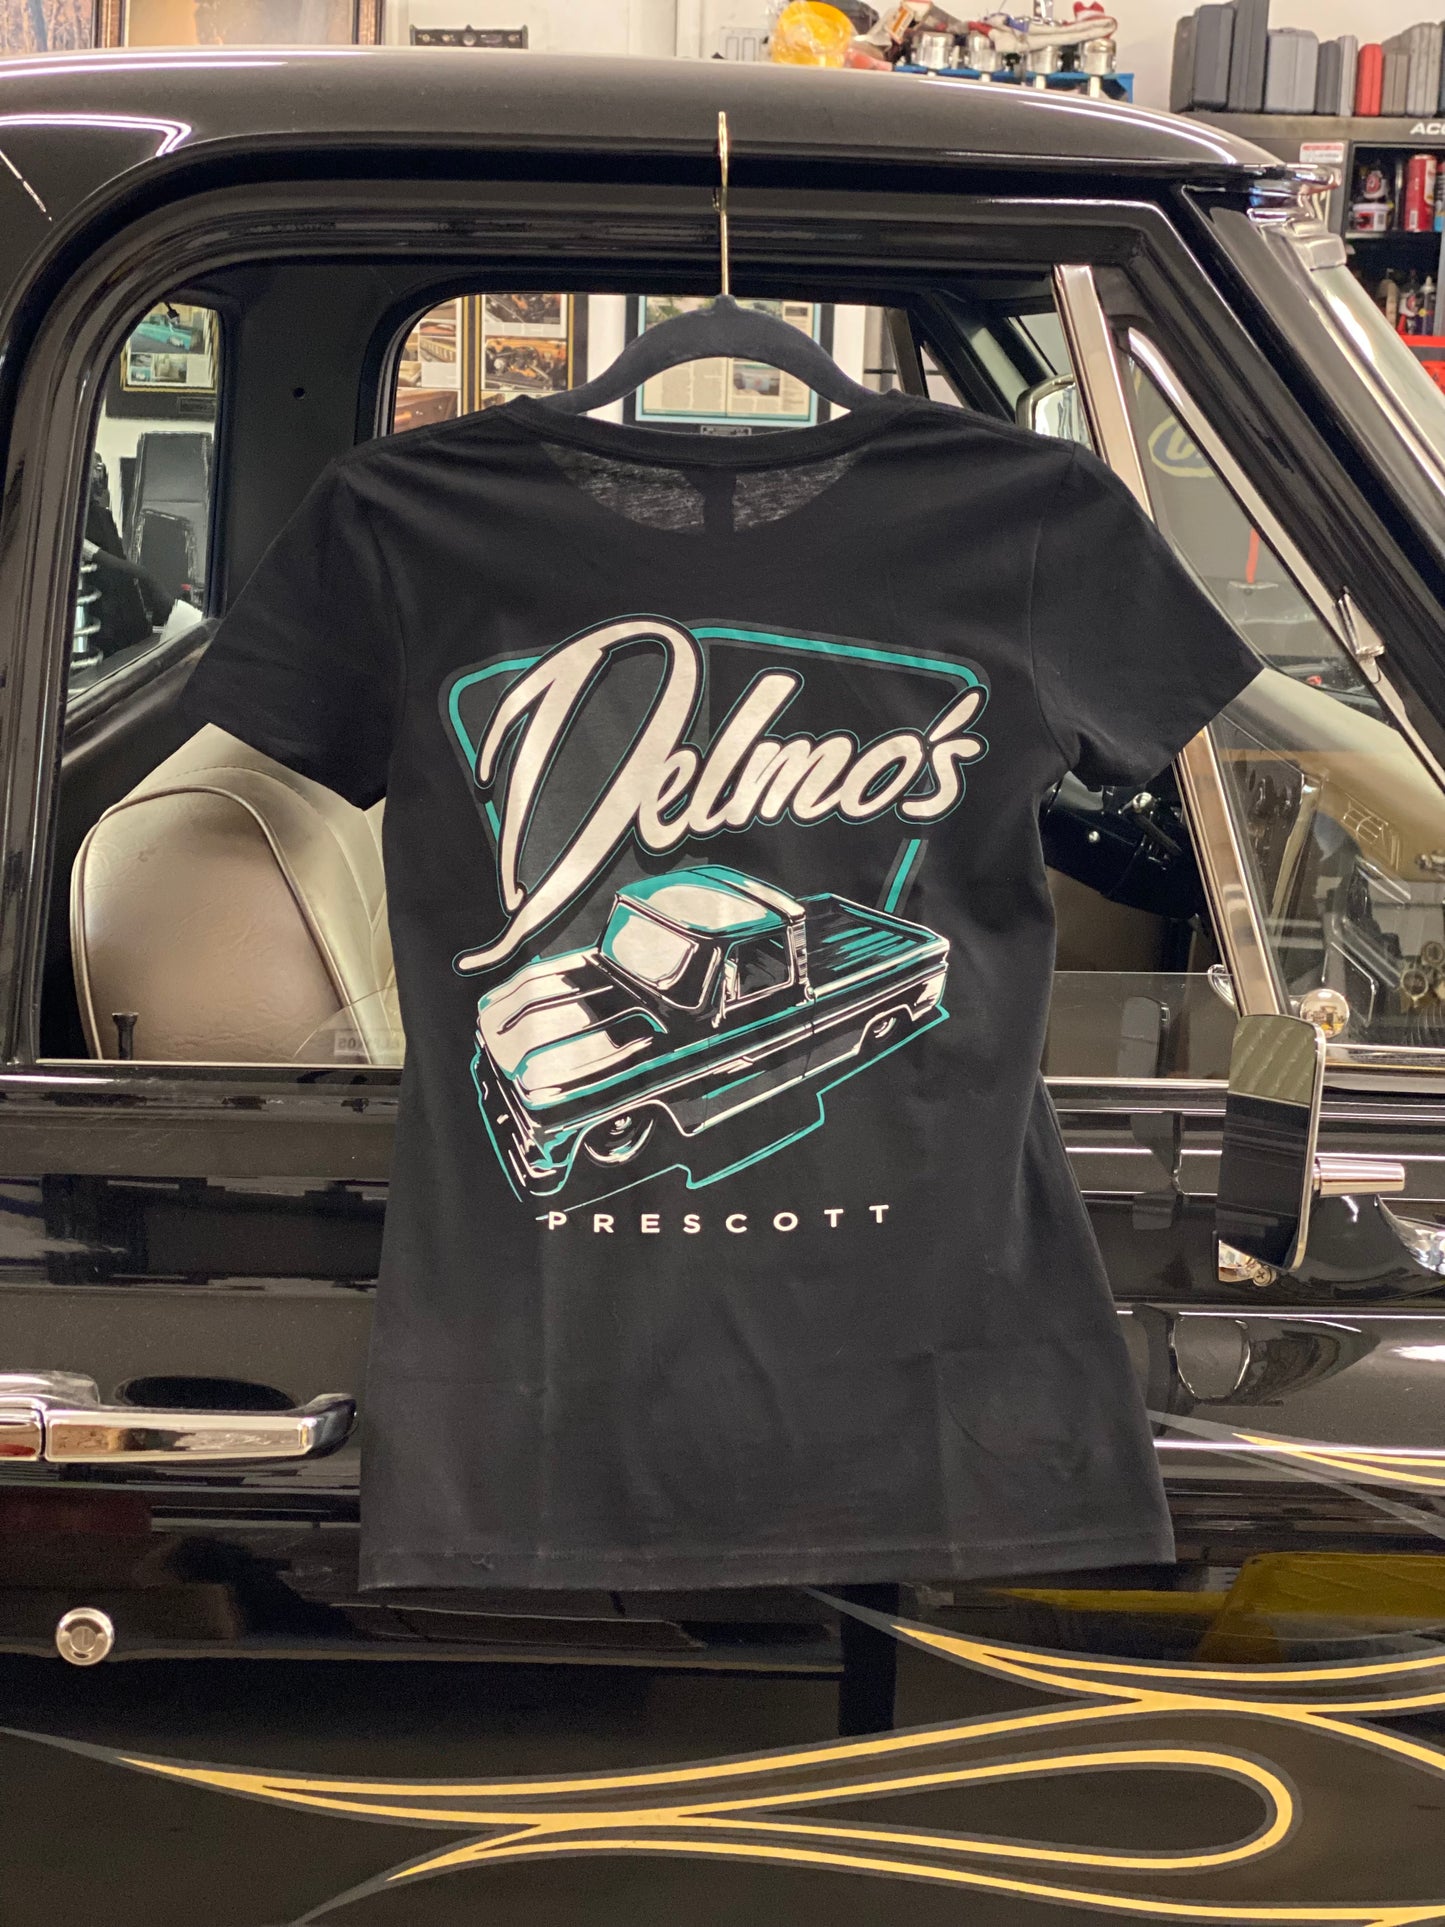 Delmo's Womens Black Prescott Crew Neck T-Shirt